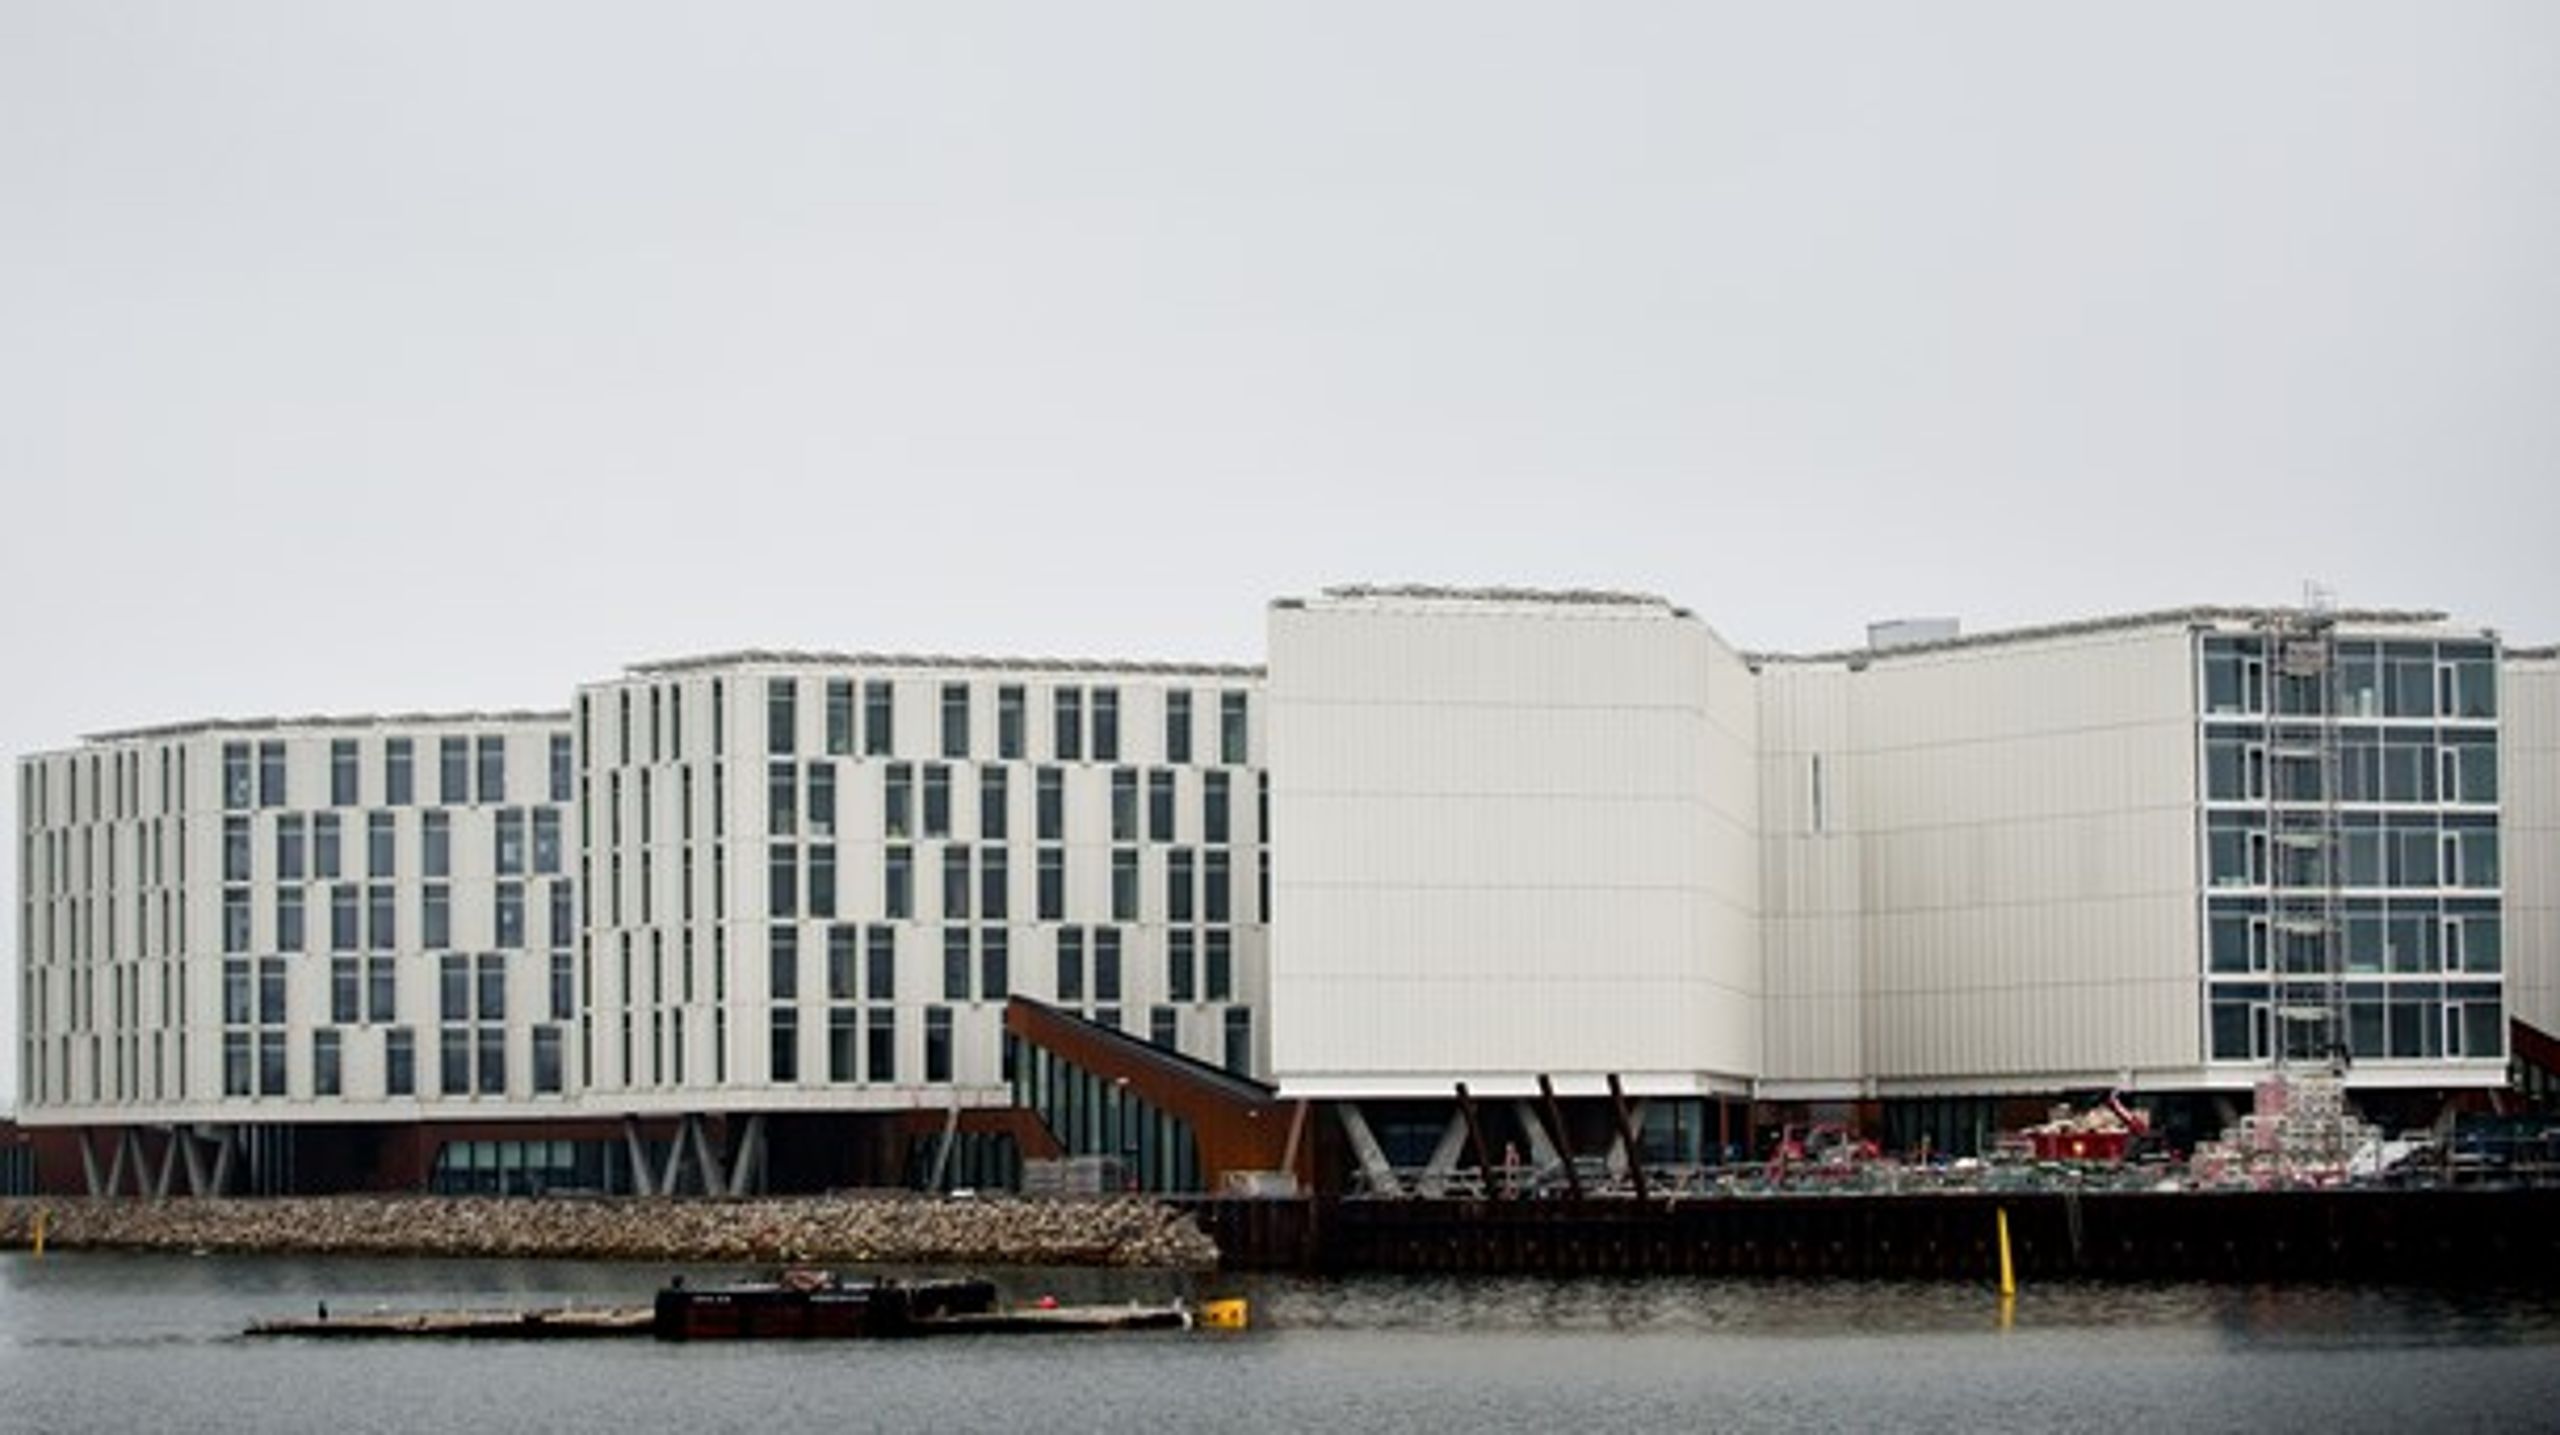 Vi skal huske, at FN også ligger i København i den flotte bæredygtige bygning ved Nordhavn. Vi bør etablere en flagallé og markere FN for danskerne, mener Katarina Ammitzbøll.